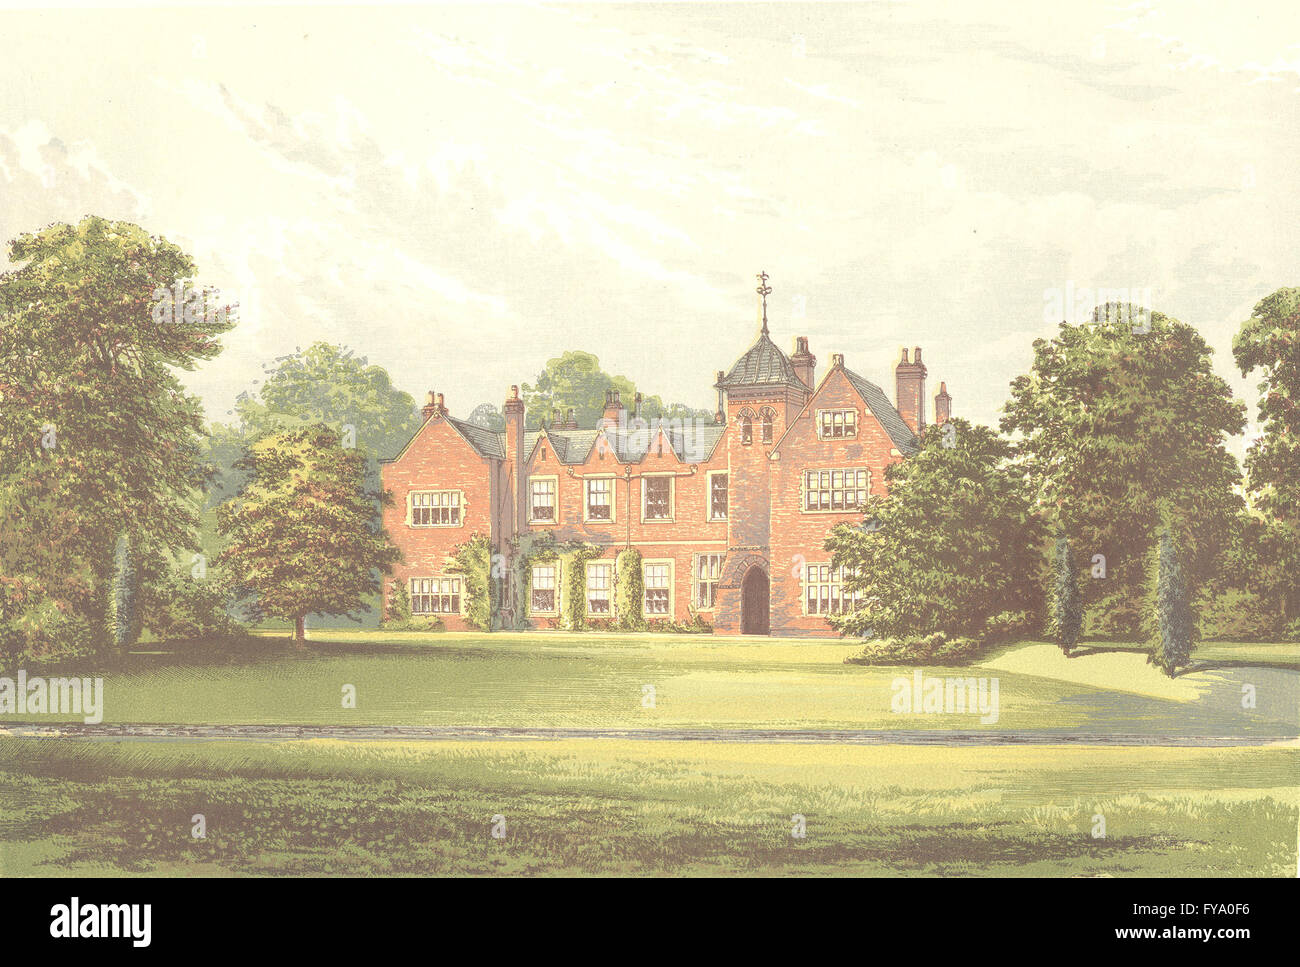 LEA, Gainsborough, Lincolnshire (Anderson, Baronet), antique print 1890 Stock Photo